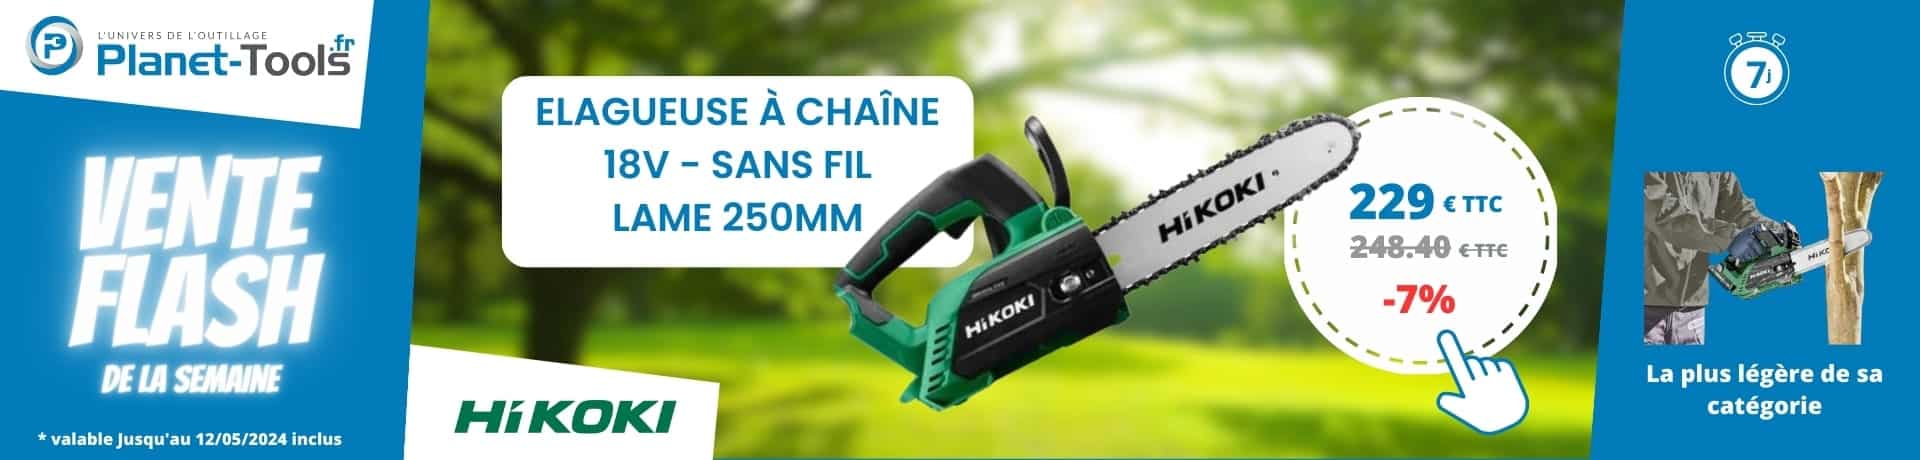 Promotion Elagueuse à chaîne 18V - Sans fil - Lame 250mm
HIKOKI